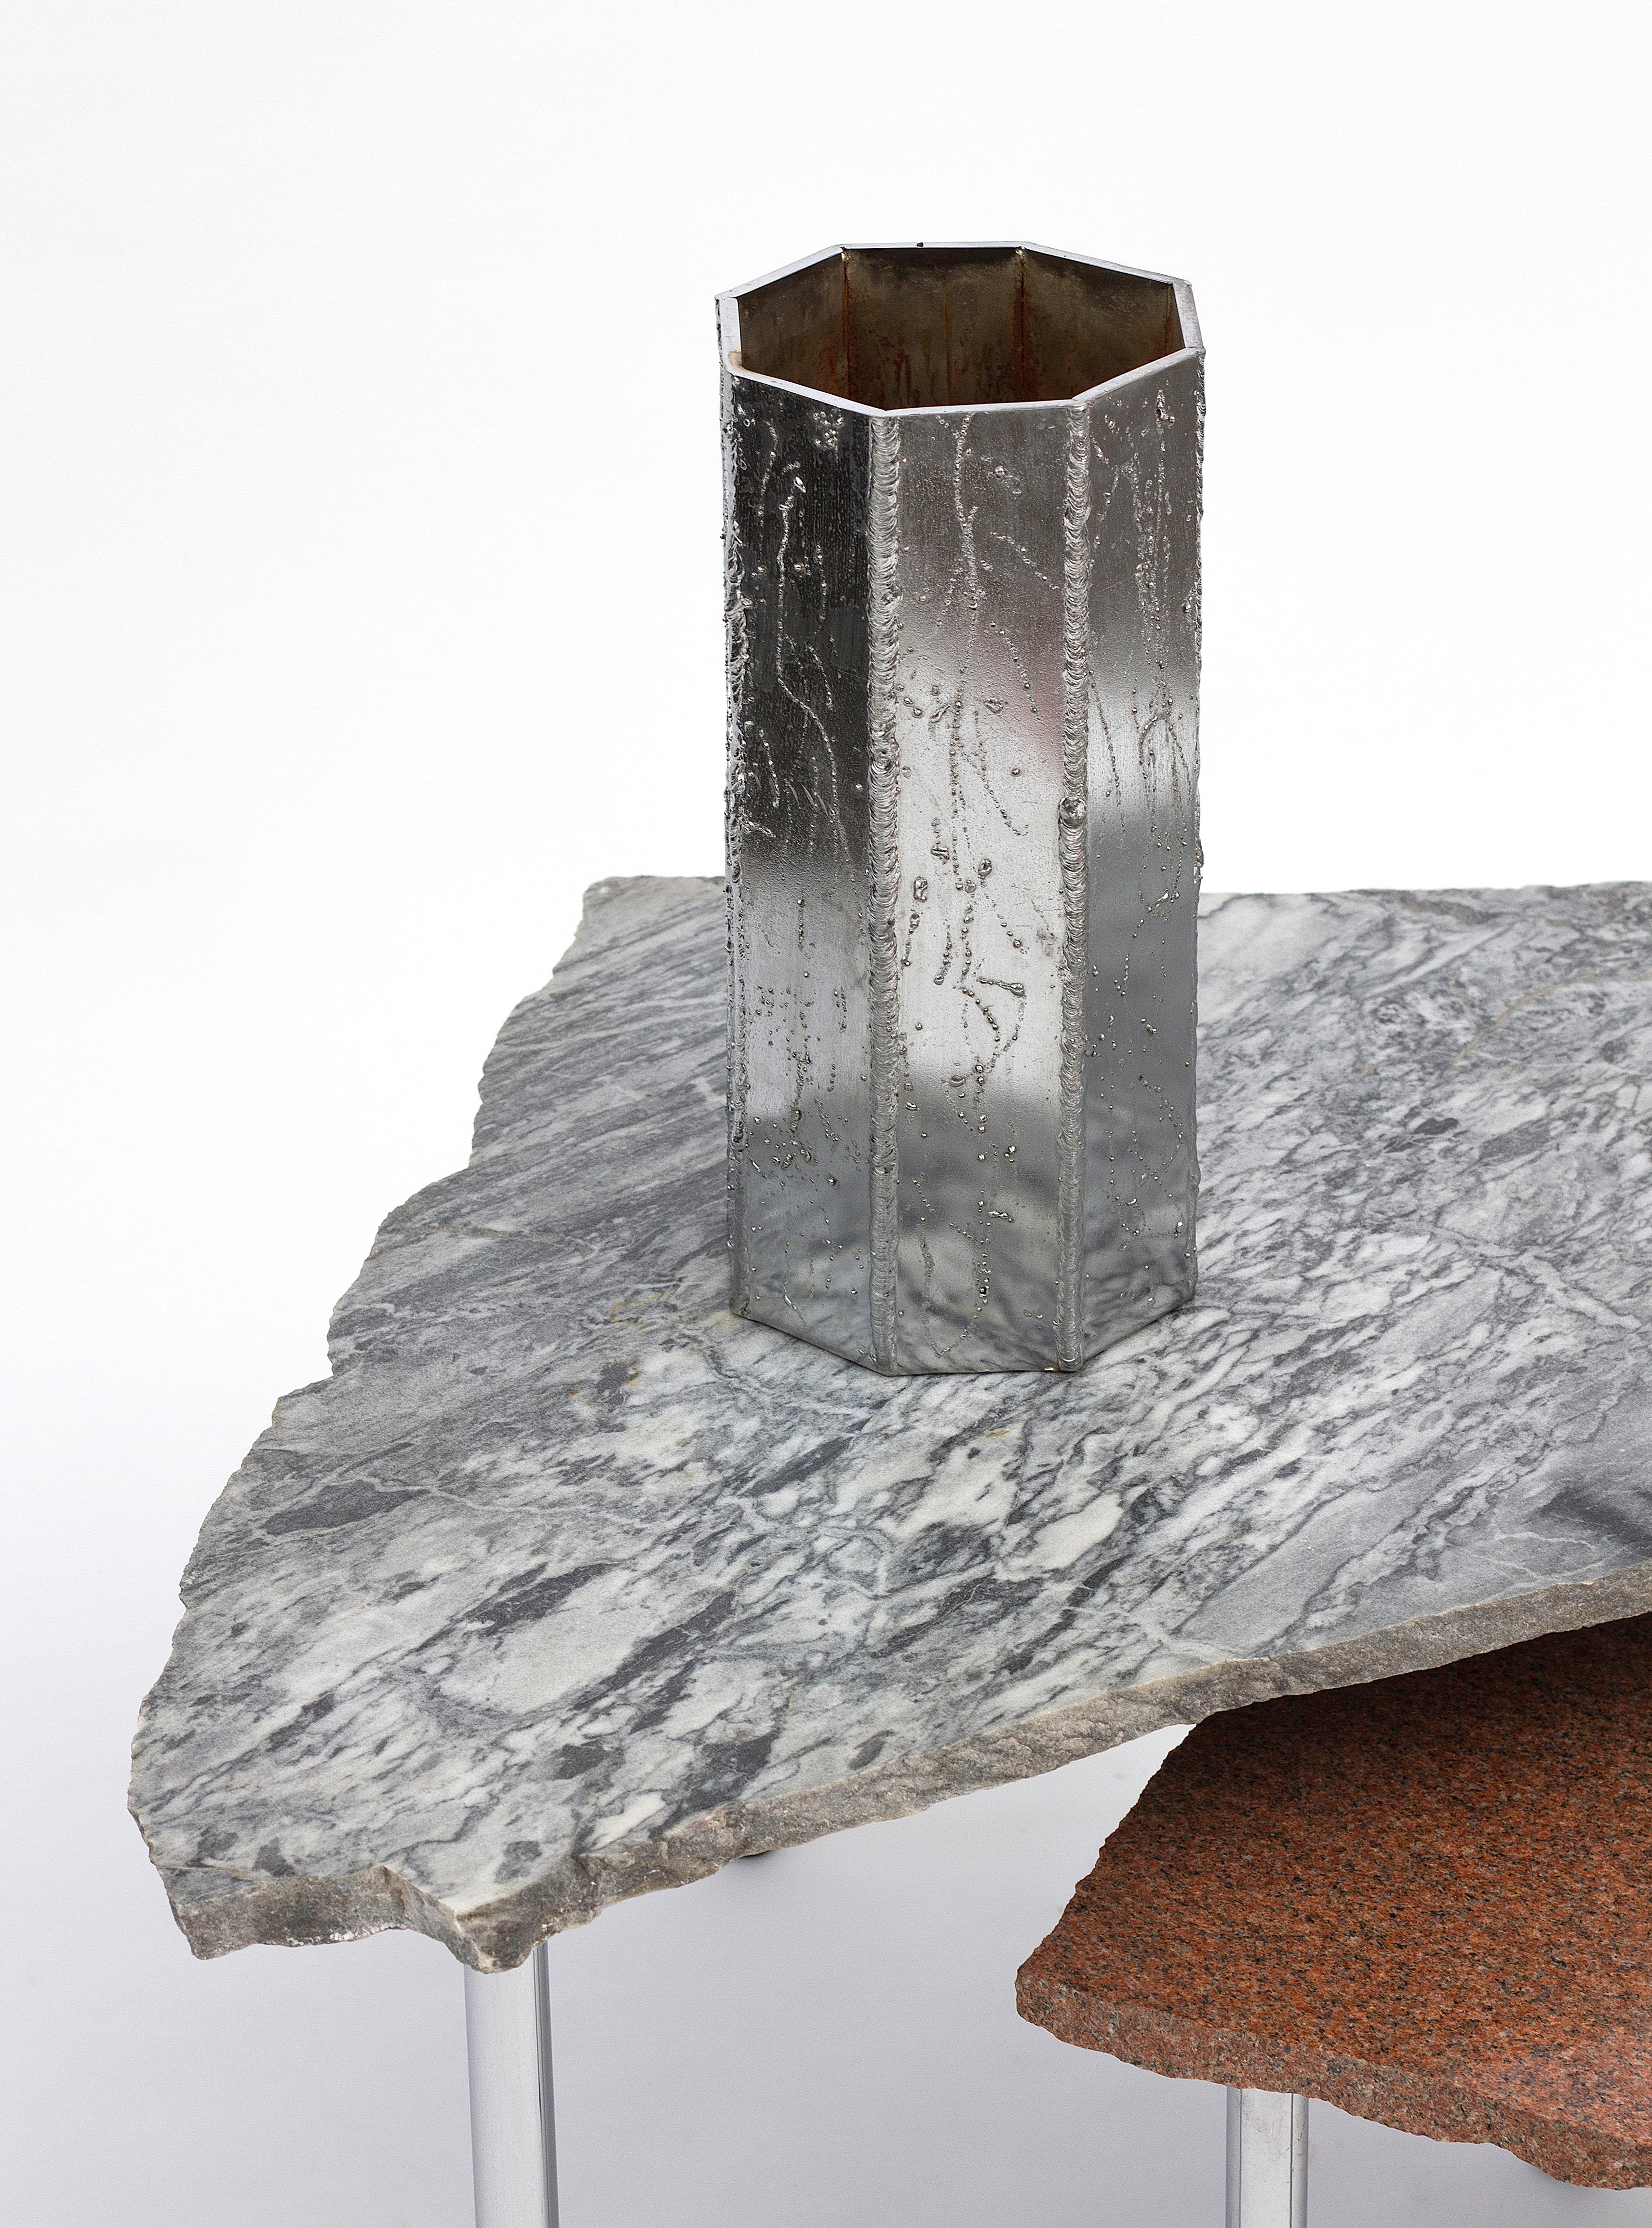 Fabriqué à partir d'acier soudé et chromé, ce vase combine un matériau commun avec une technique brute et une finition intentionnellement grossière pour produire un objet fonctionnel raffiné et magnifique. Chaque lourde plaque métallique est